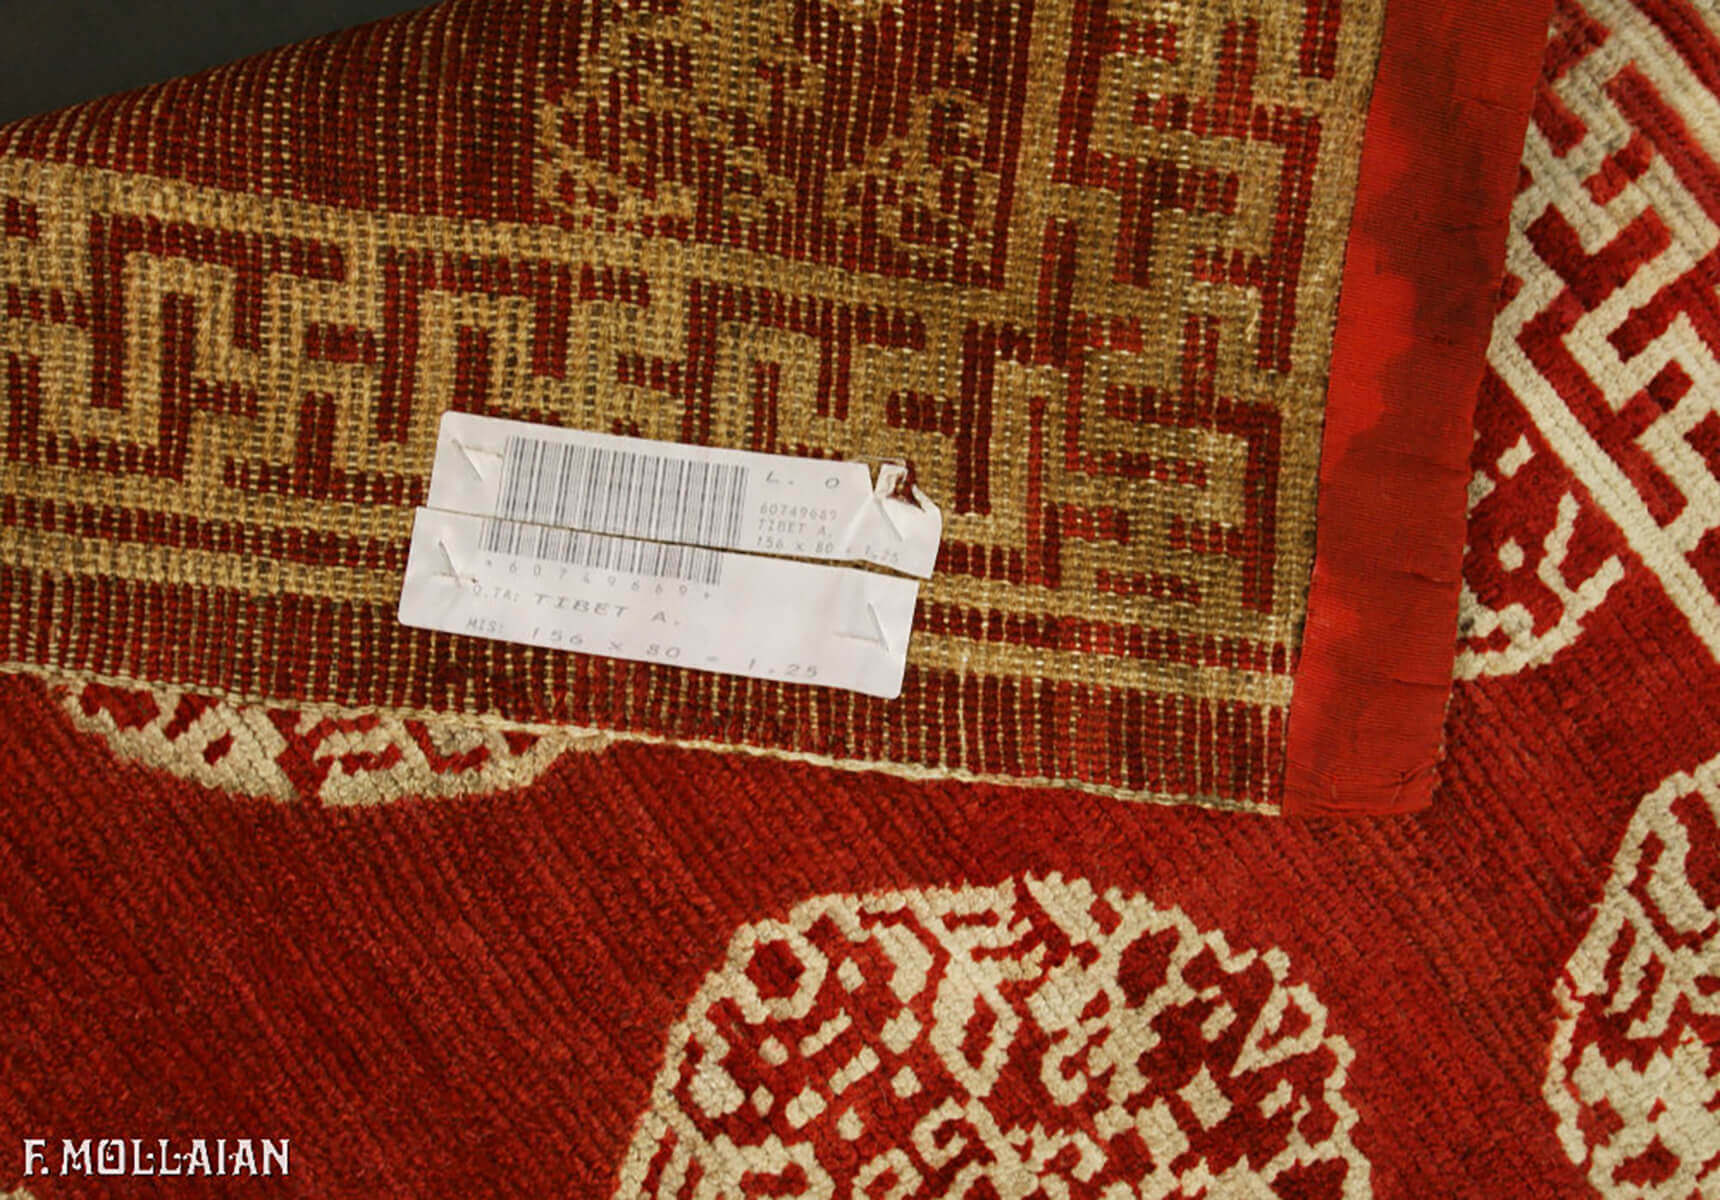 Teppich Antiker Tibet n°:60749669